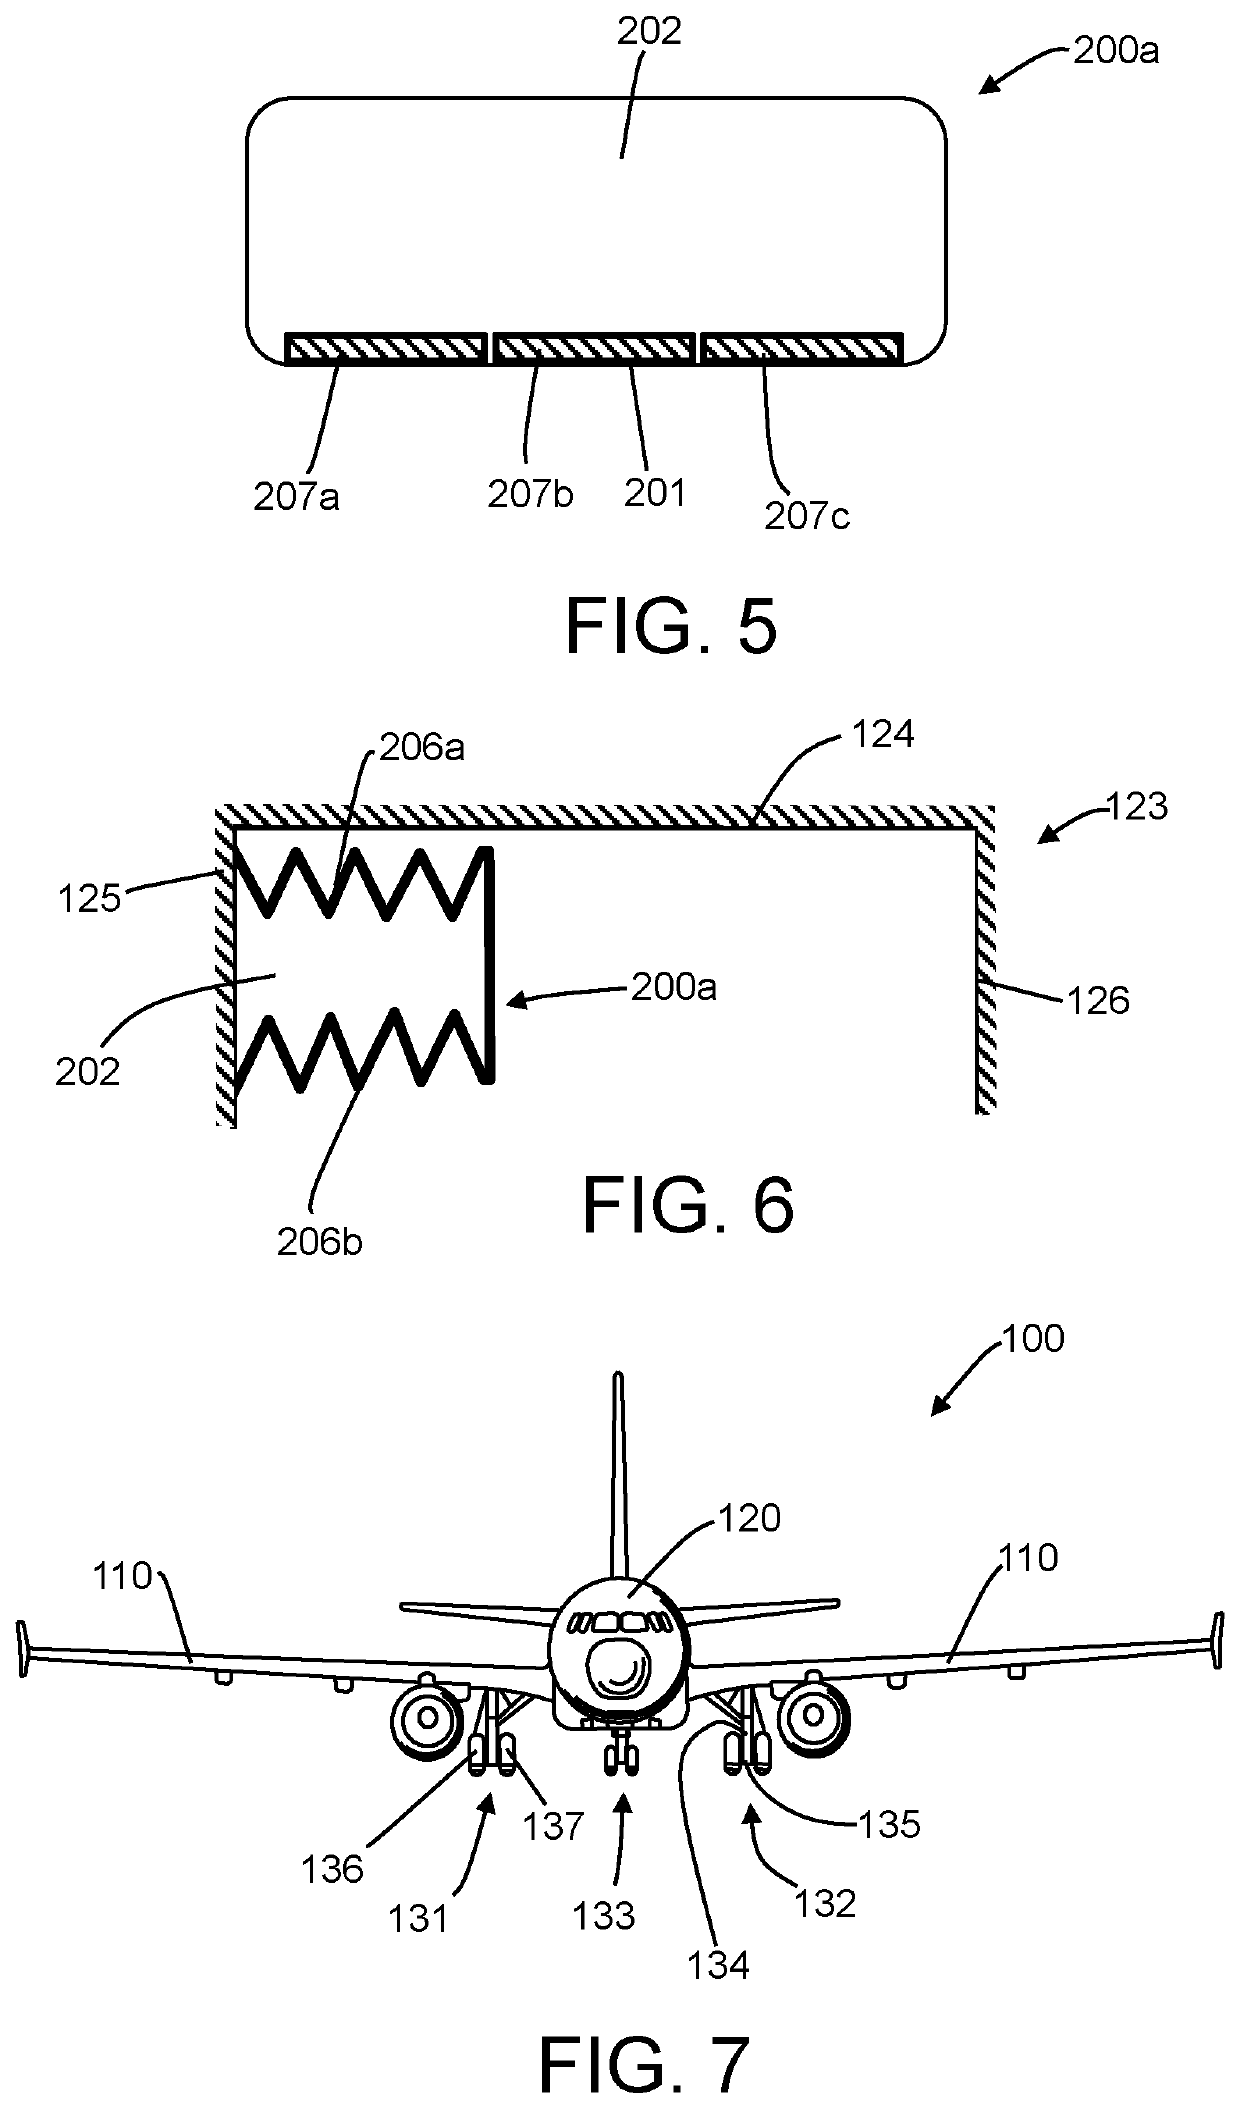 Aircraft landing gear arrangement